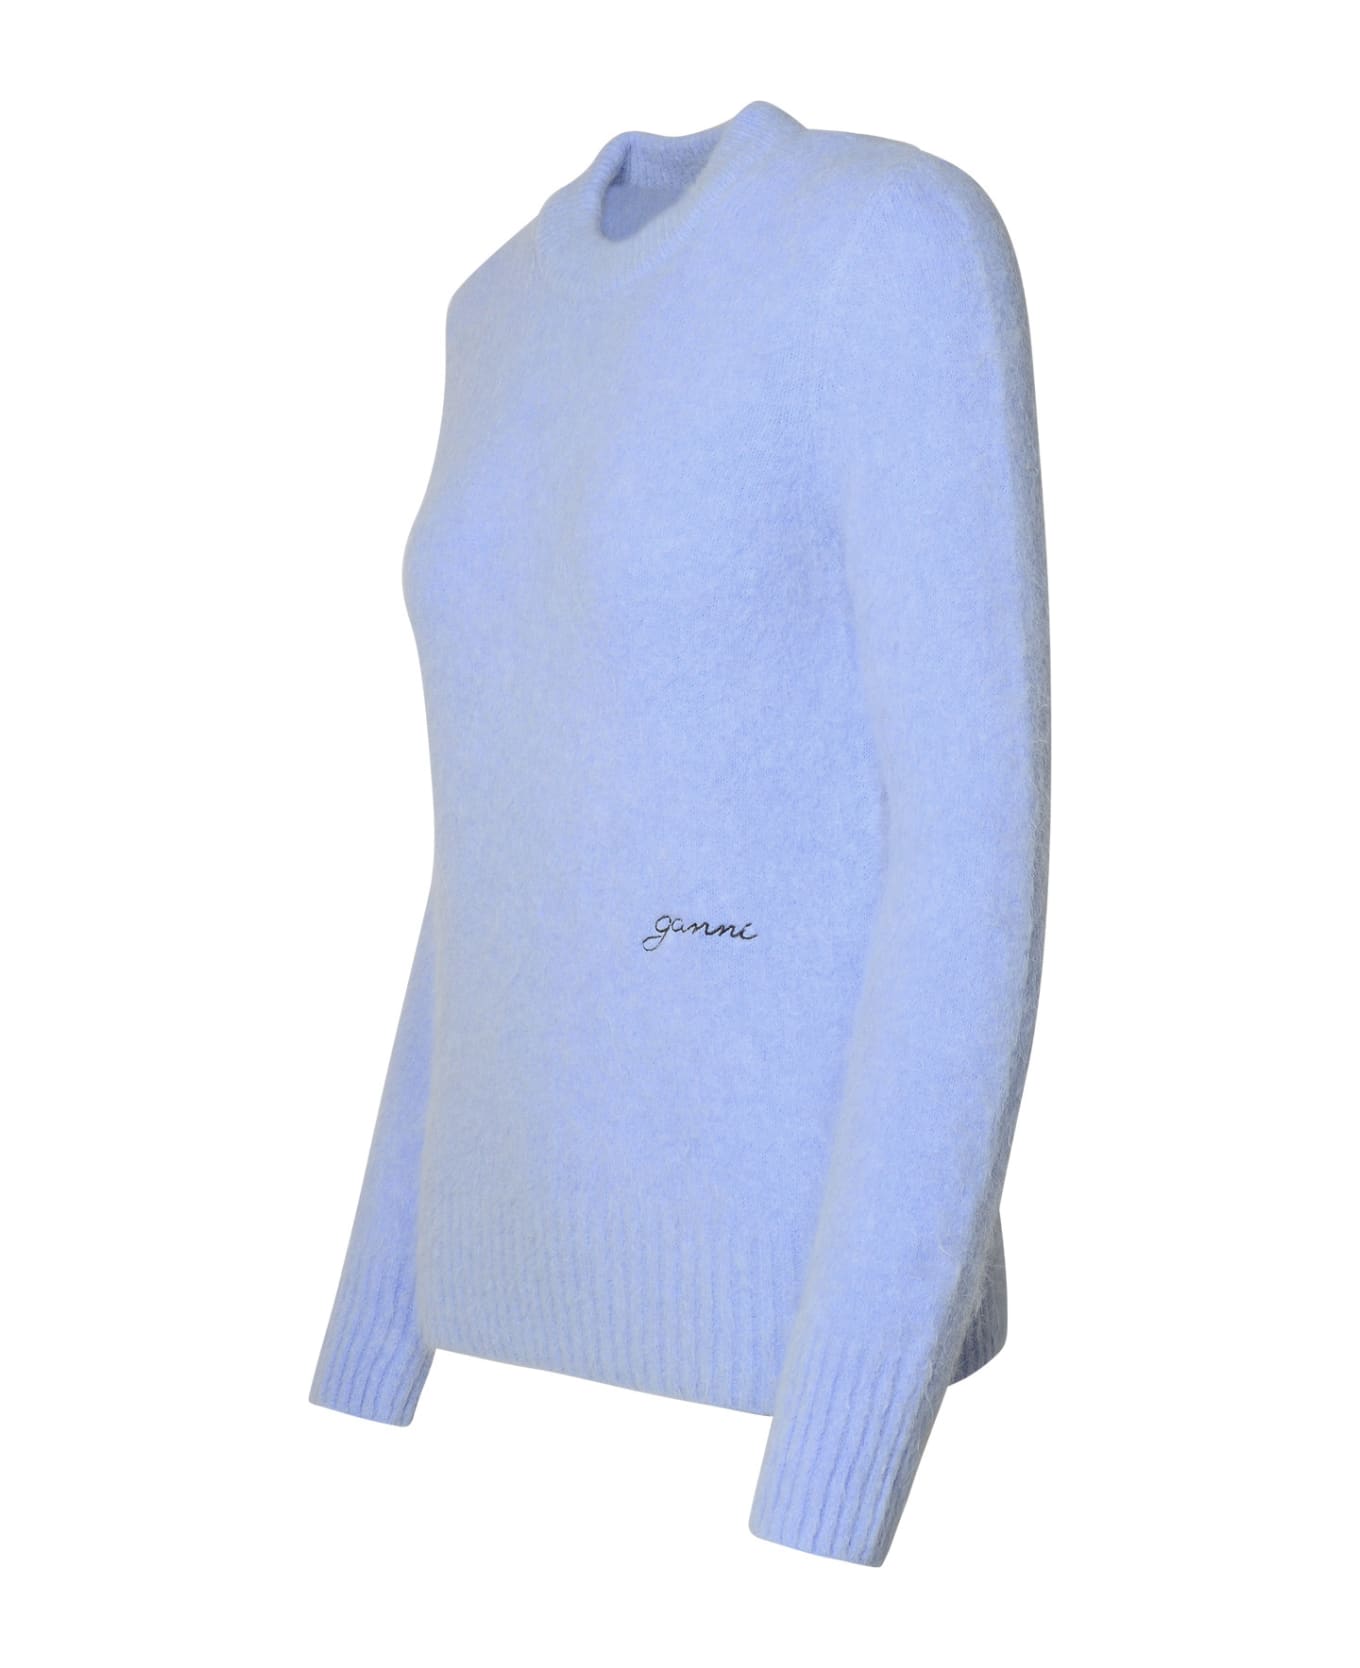 Ganni Light Blue Virgin Wool Blend Sweater - Liliac